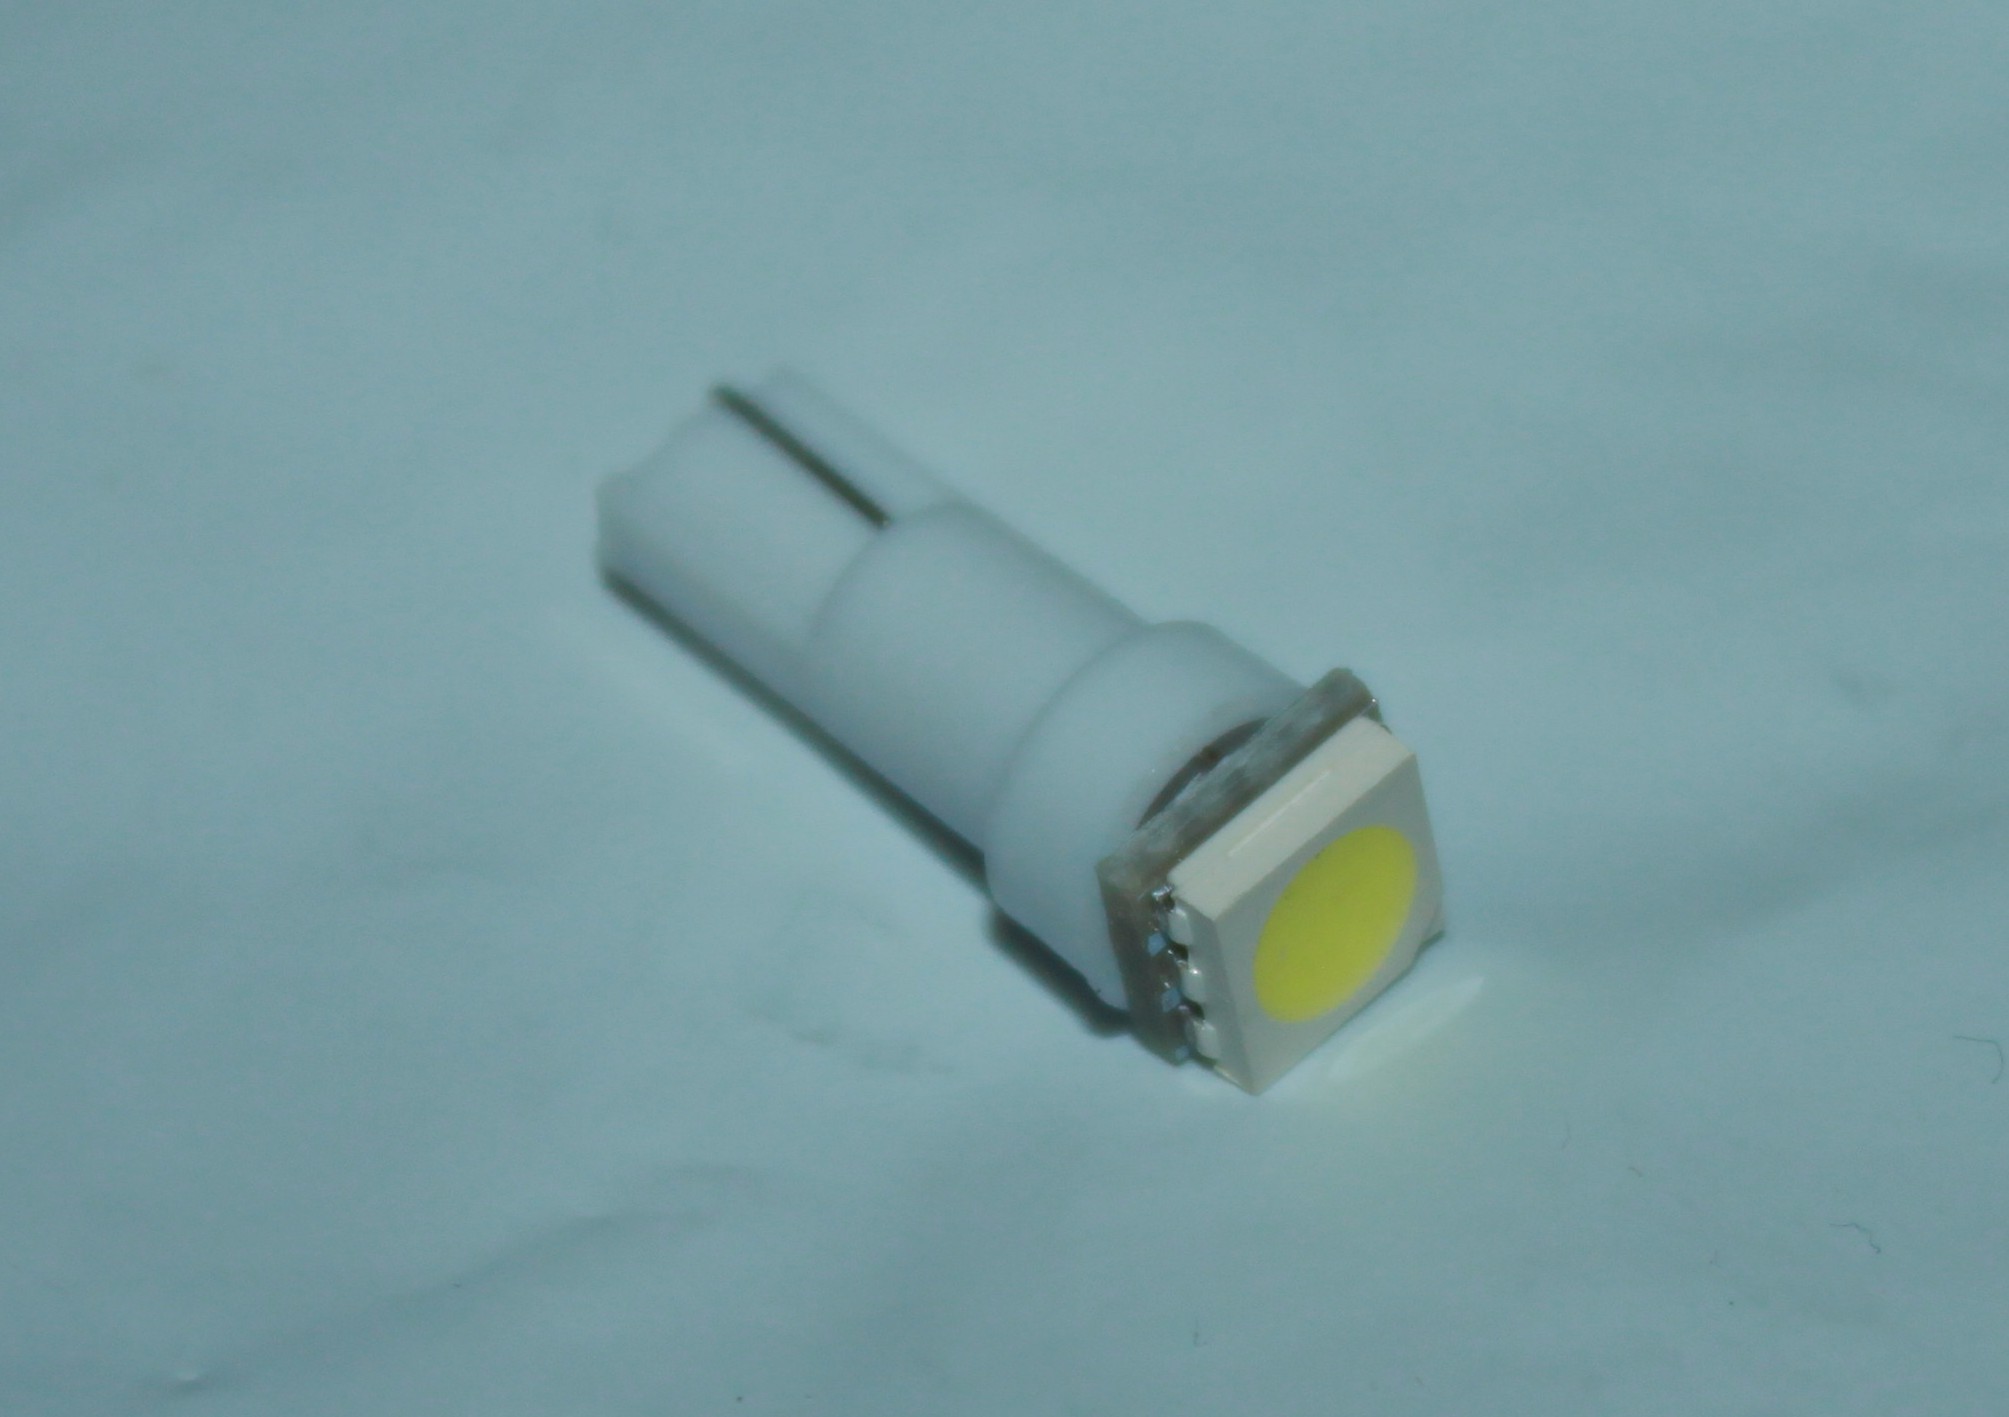 Luce lampadina T5 LED chip SMD 1210 tuning bianca strumentazione interni  cruscotto - Marco Rigon